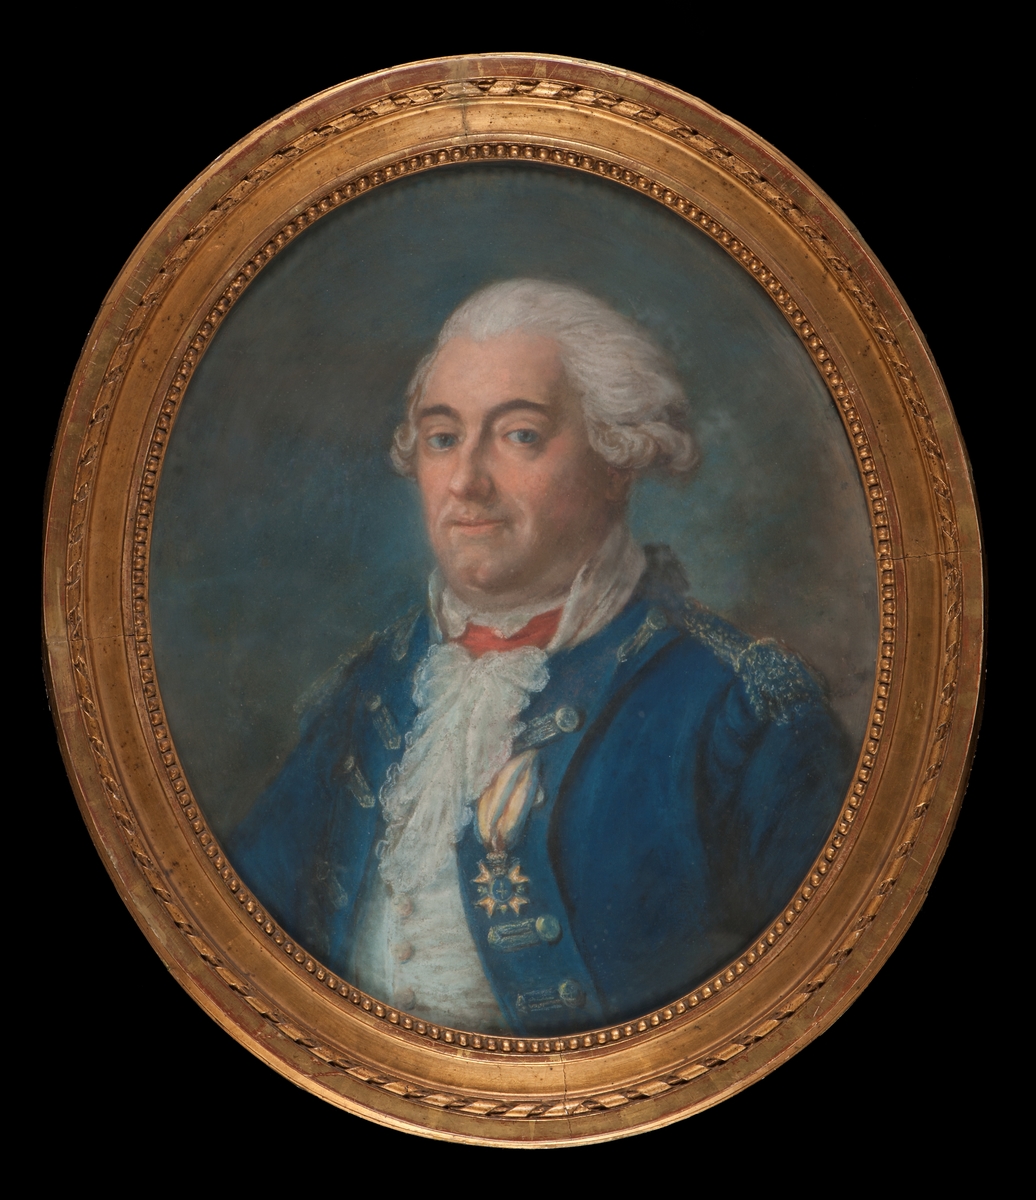 Föreställer viceamiralen friherre Johan von Rajalin (1715-1786) utförd av Gustaf Lundberg (1695-1786). Midjebild, face åt vänster i blå uniformsrock med Svärdsordens riddartecken. Oval, förgylld, originalram, bredd 7 cm, dagöppning 51 x 63 cm.